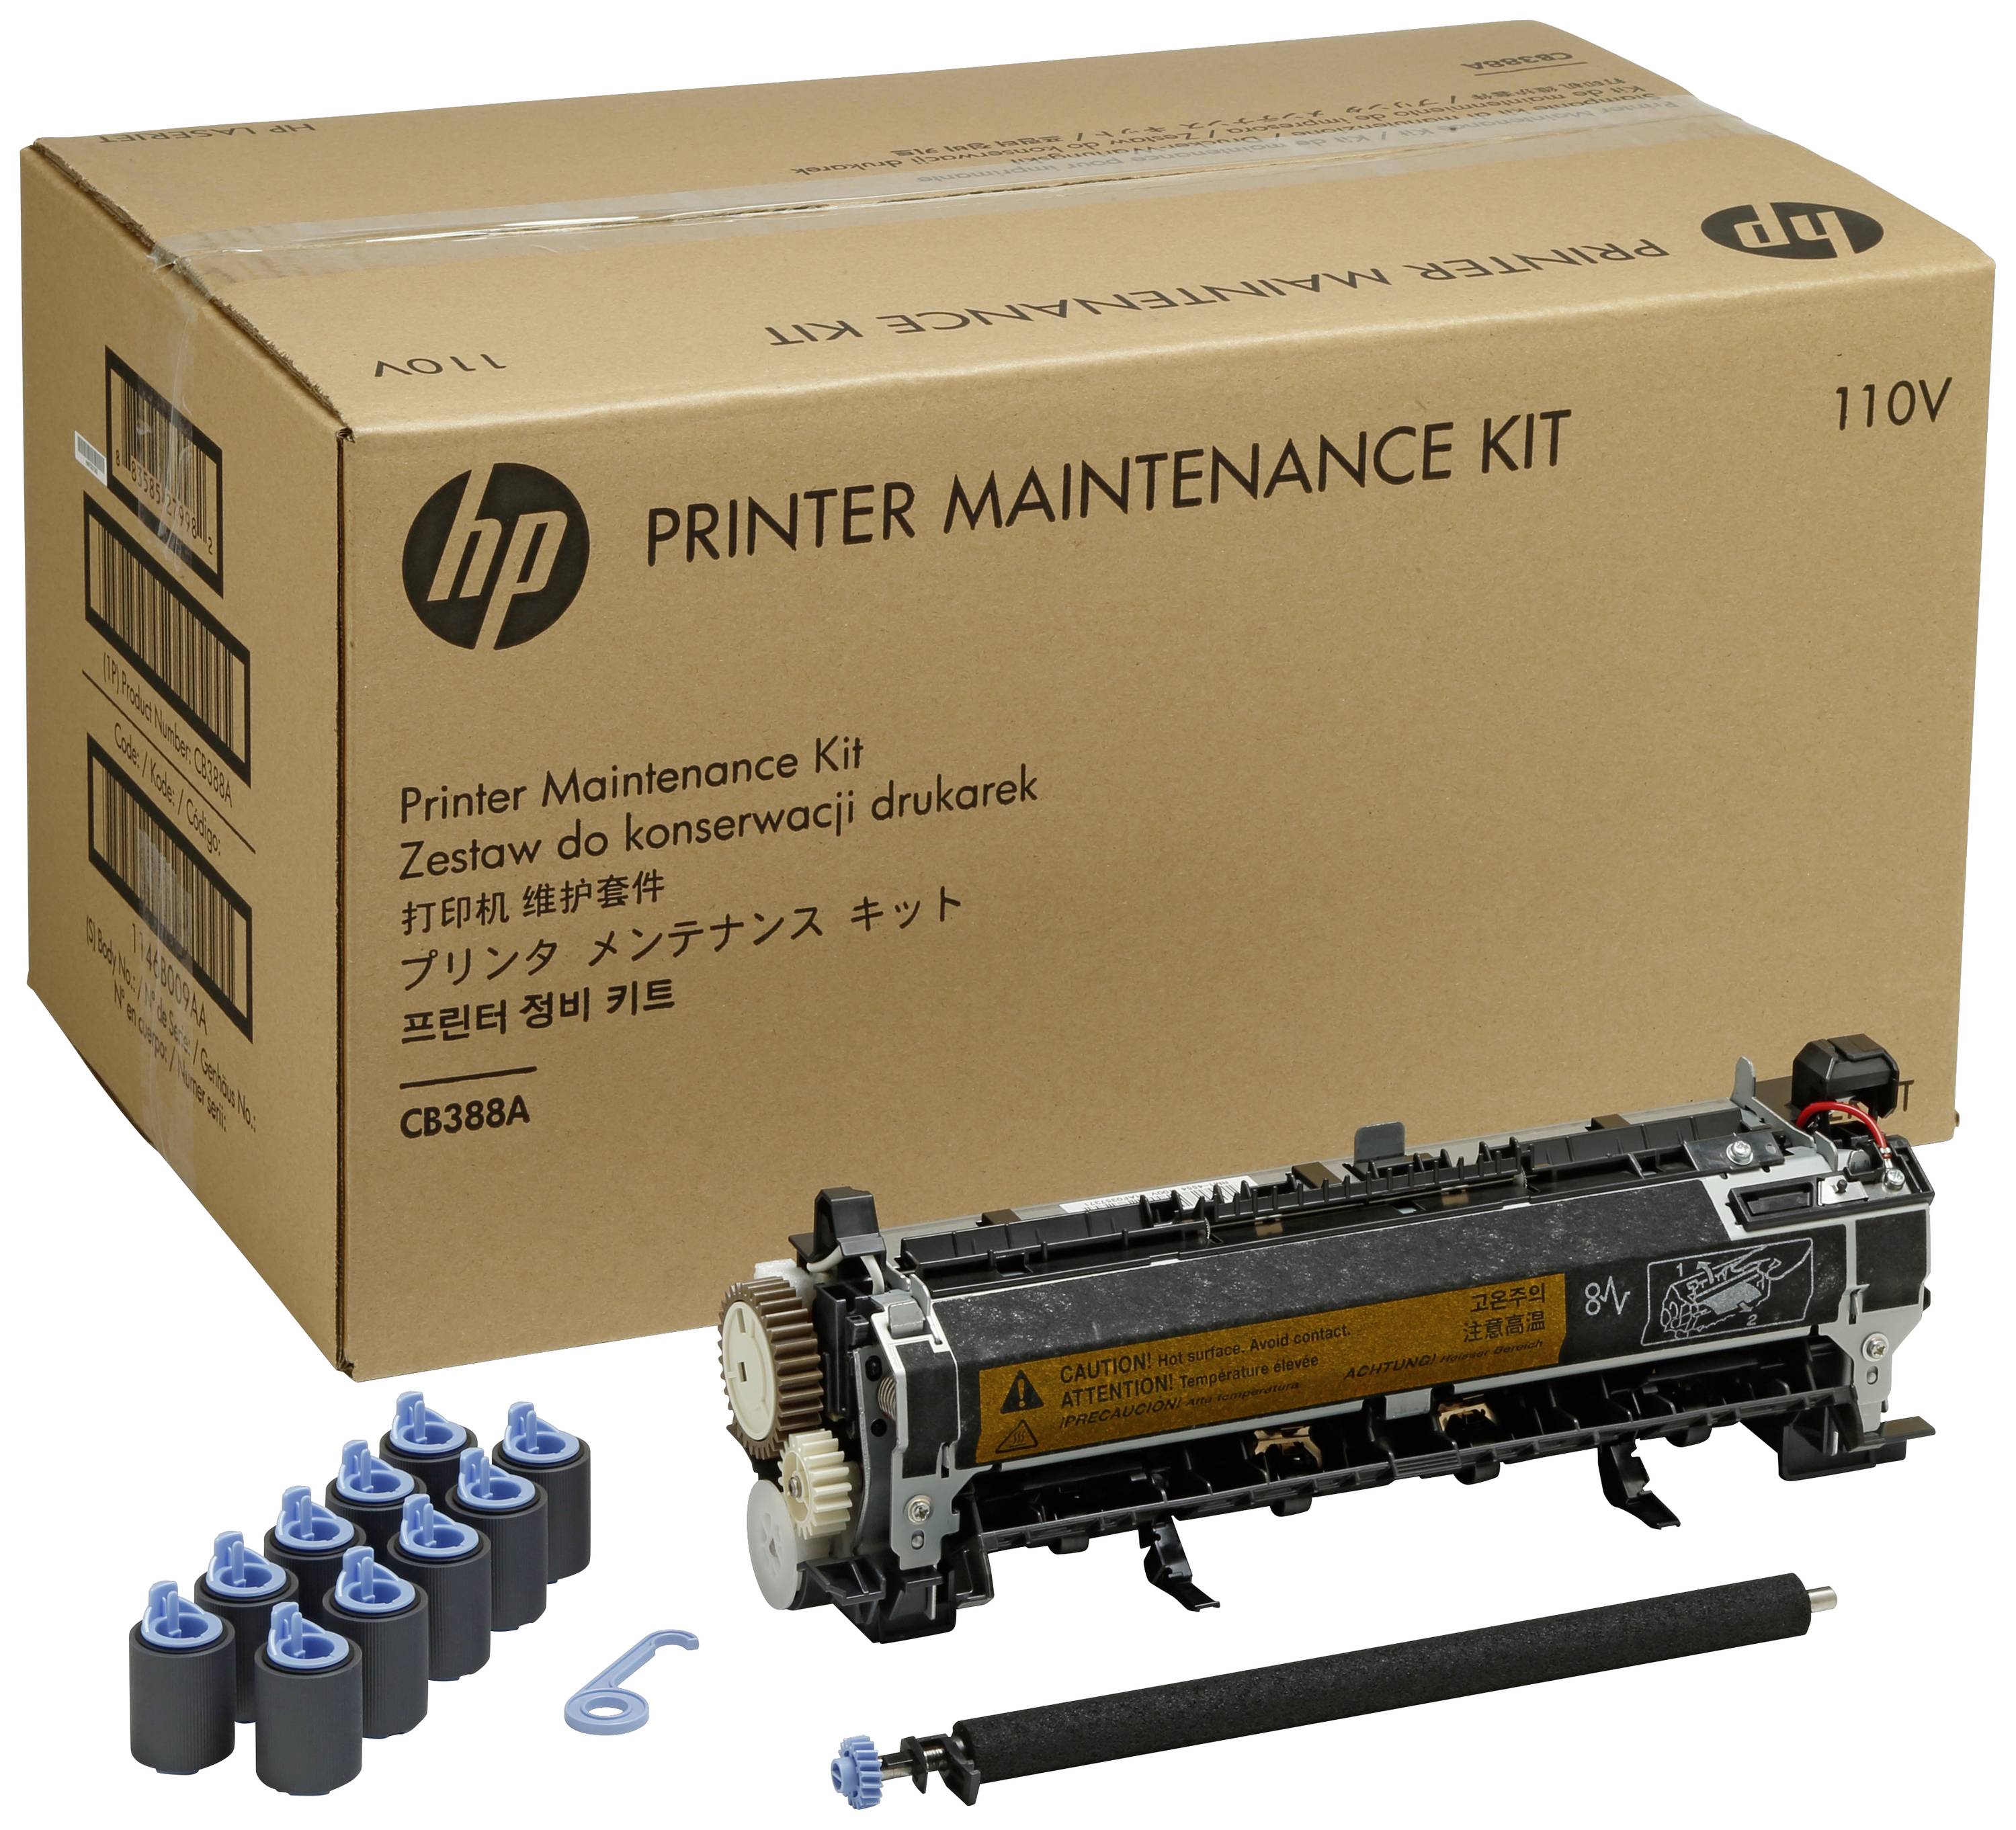 HP WartungsKit 220V für LaserJet P4014 P4015 P4515 Serie für 225.000 Seiten